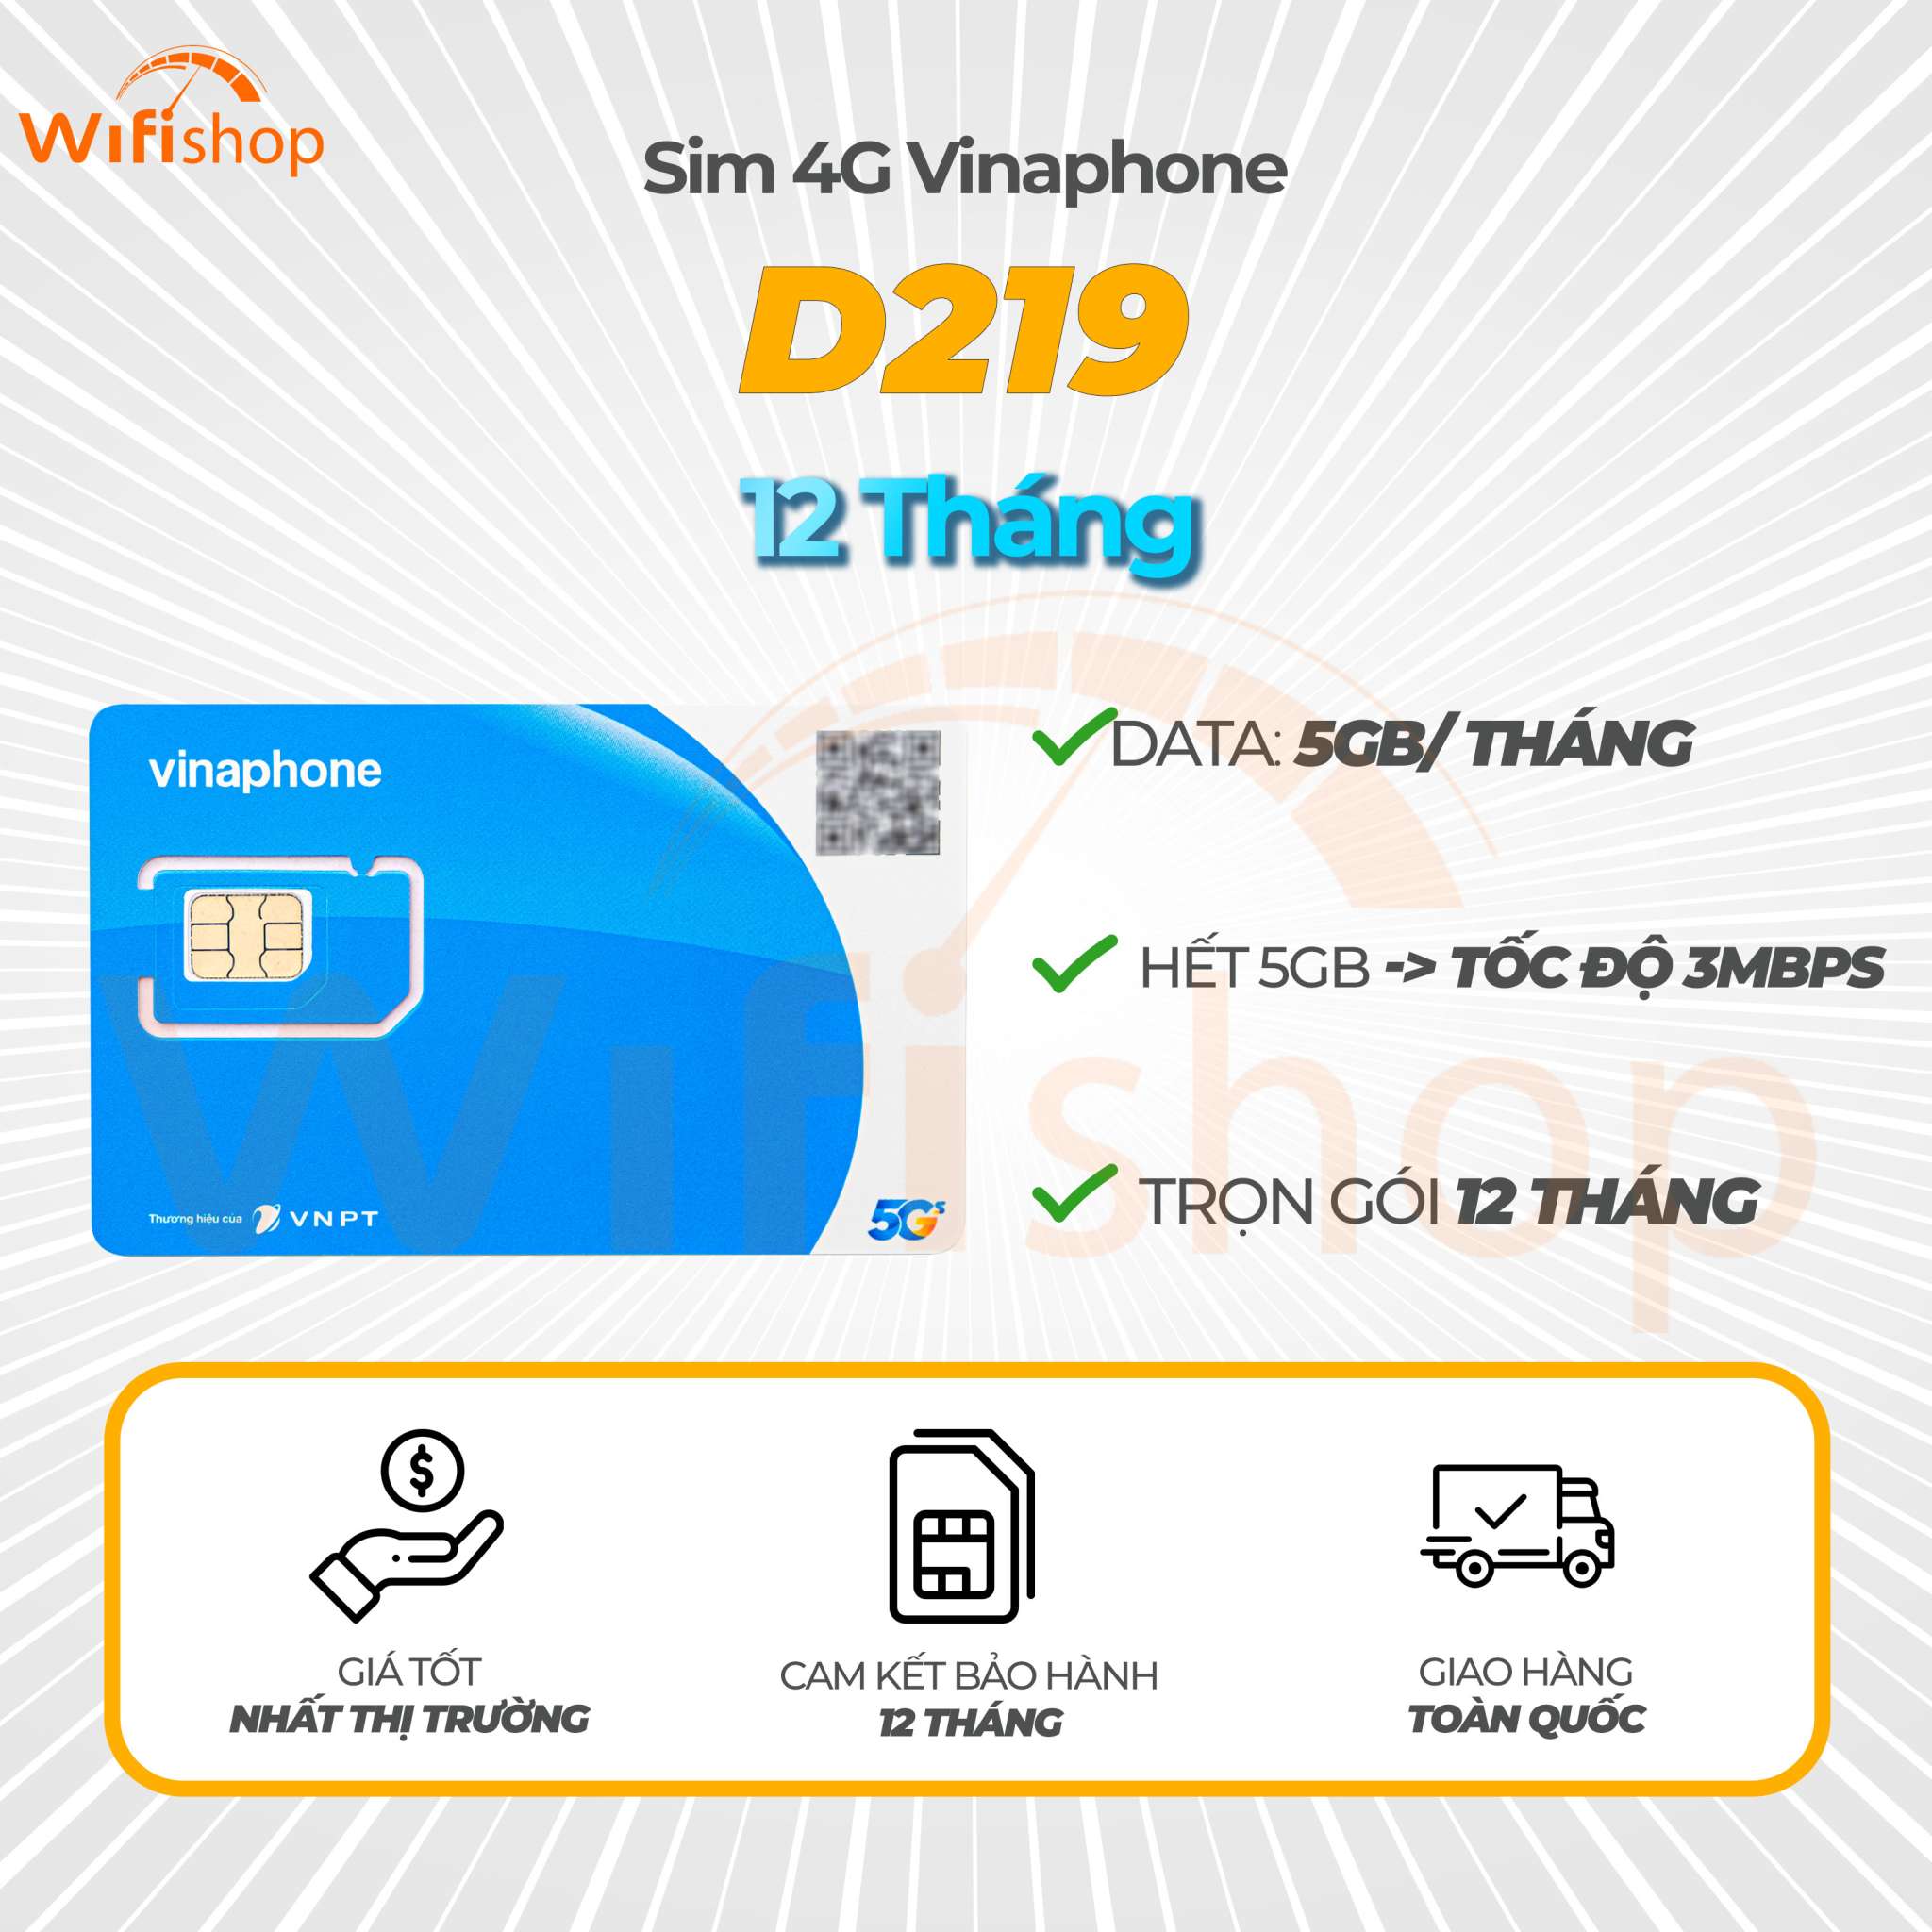 Sim Vinaphone 5G D219 5Gb/Tháng Không Giới Hạn Tỷ GB 3Mbps - Trọn gói 12 Tháng